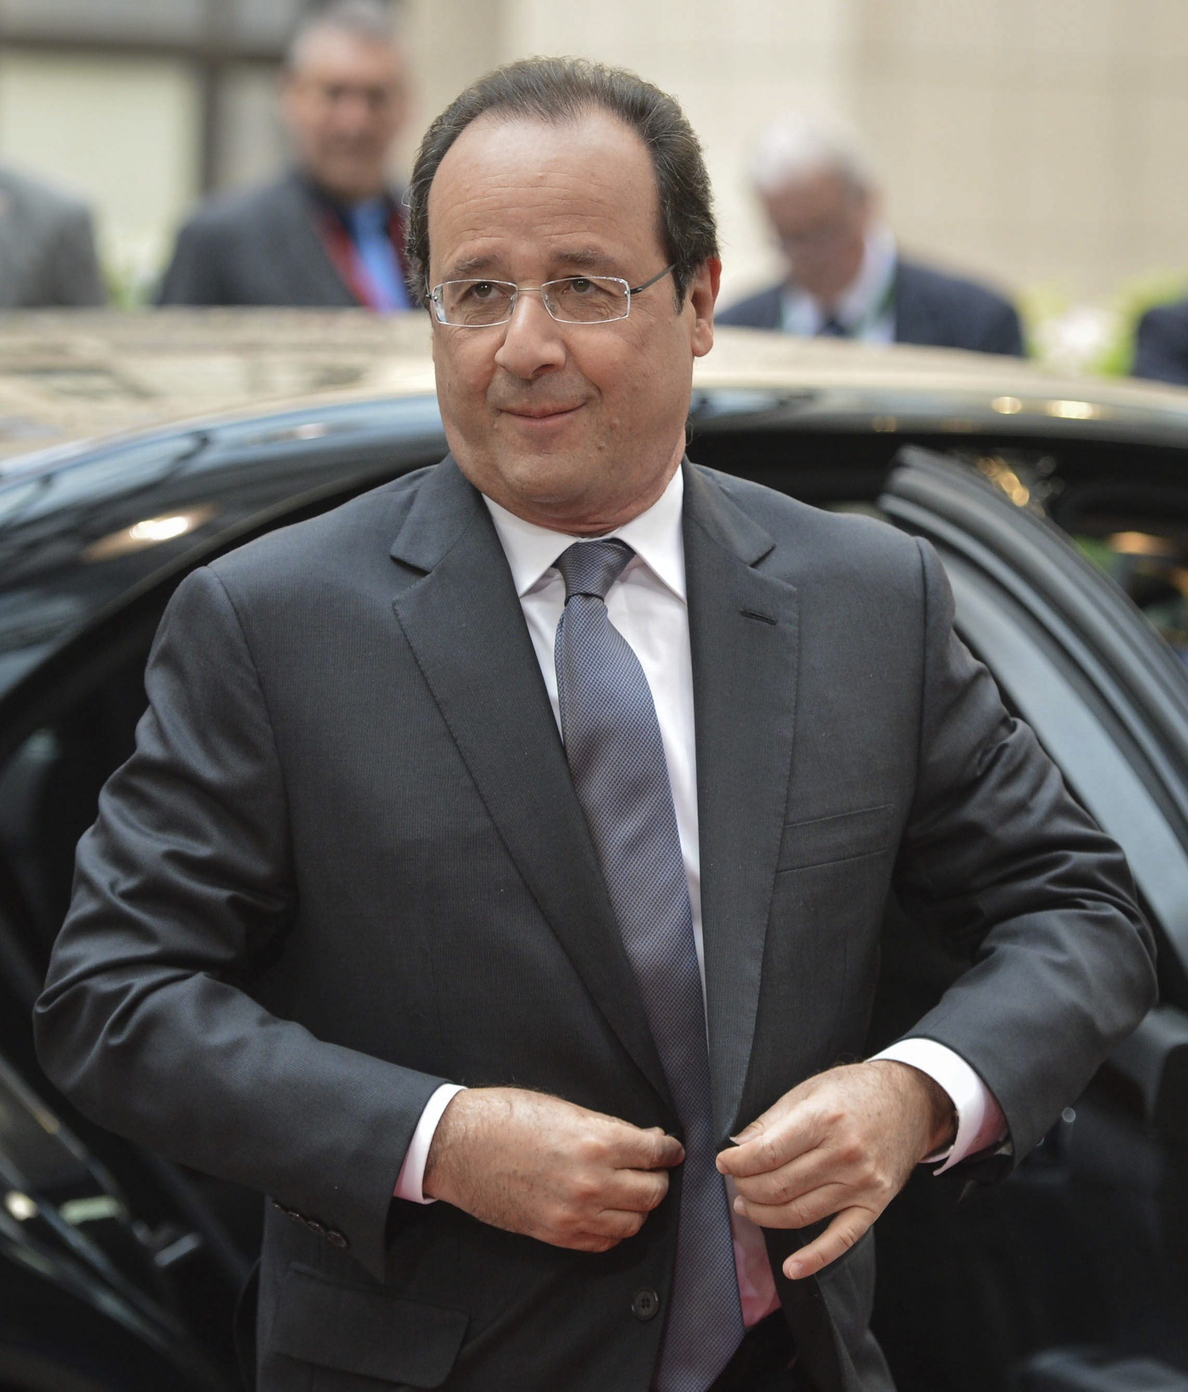 La popularidad de Hollande sube 5 puntos y recupera el apoyo de uno de cada cuatro franceses